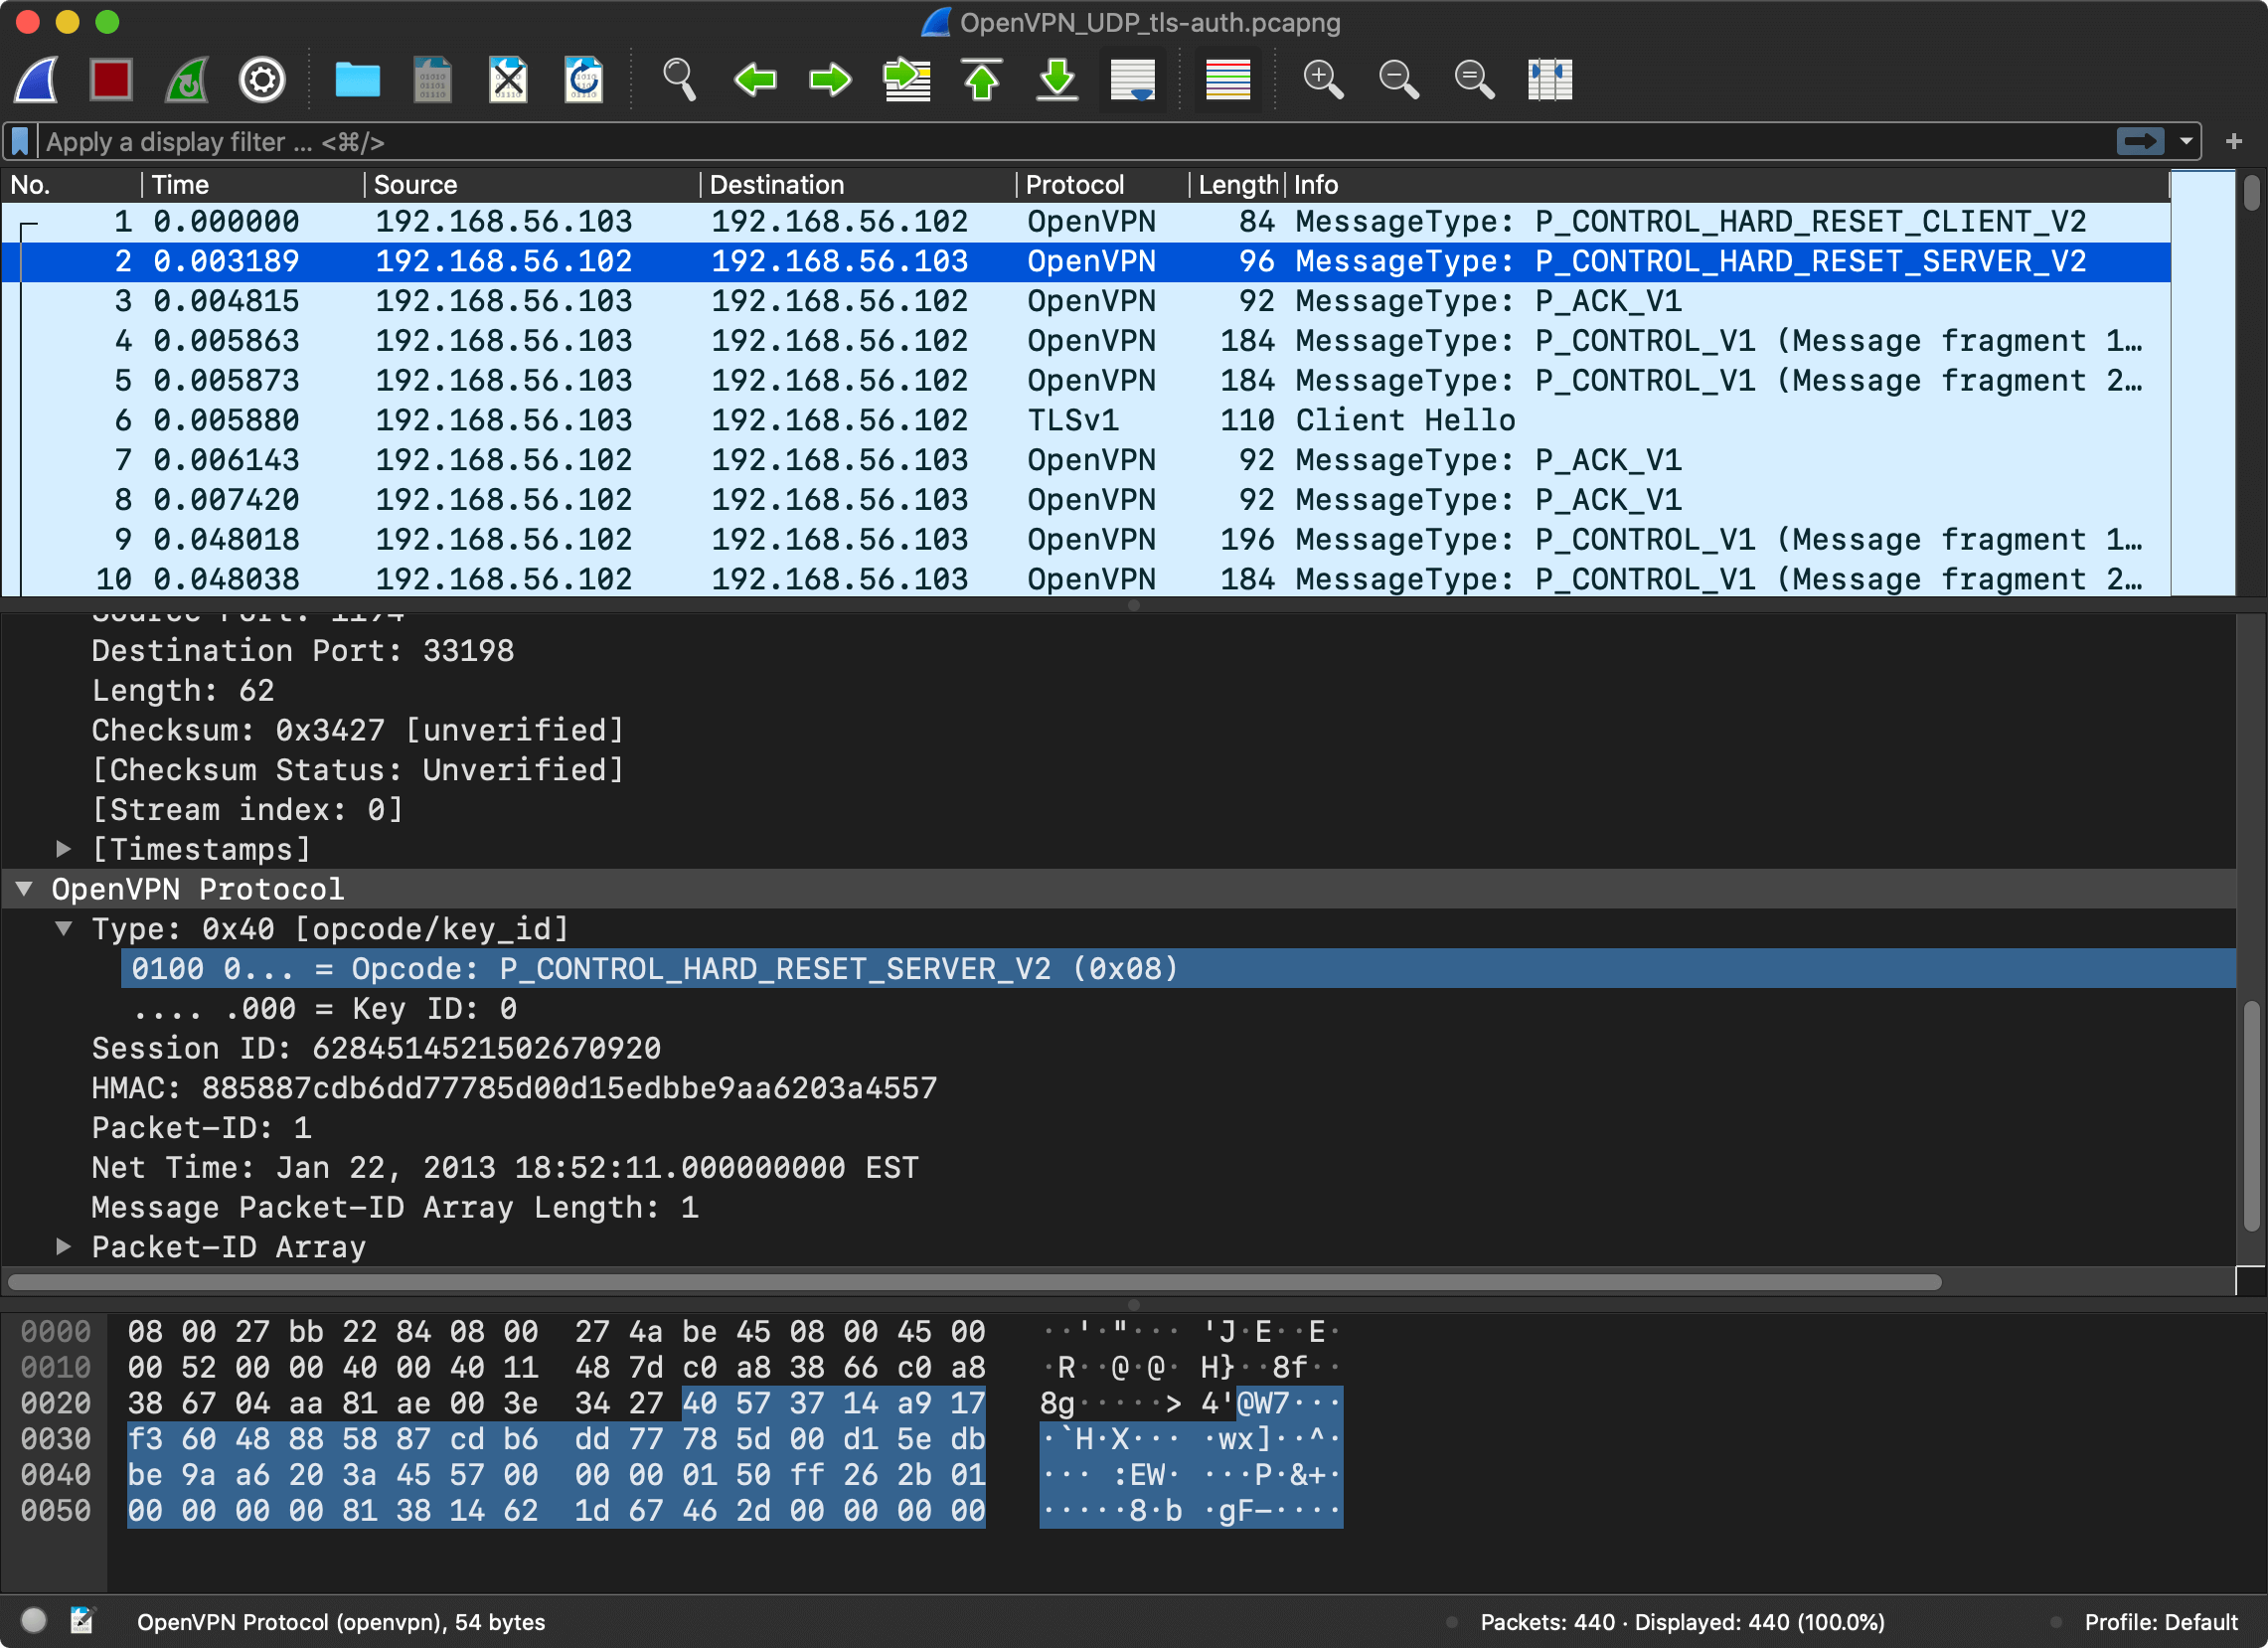 Wireshark capture: OpenVPN server reset